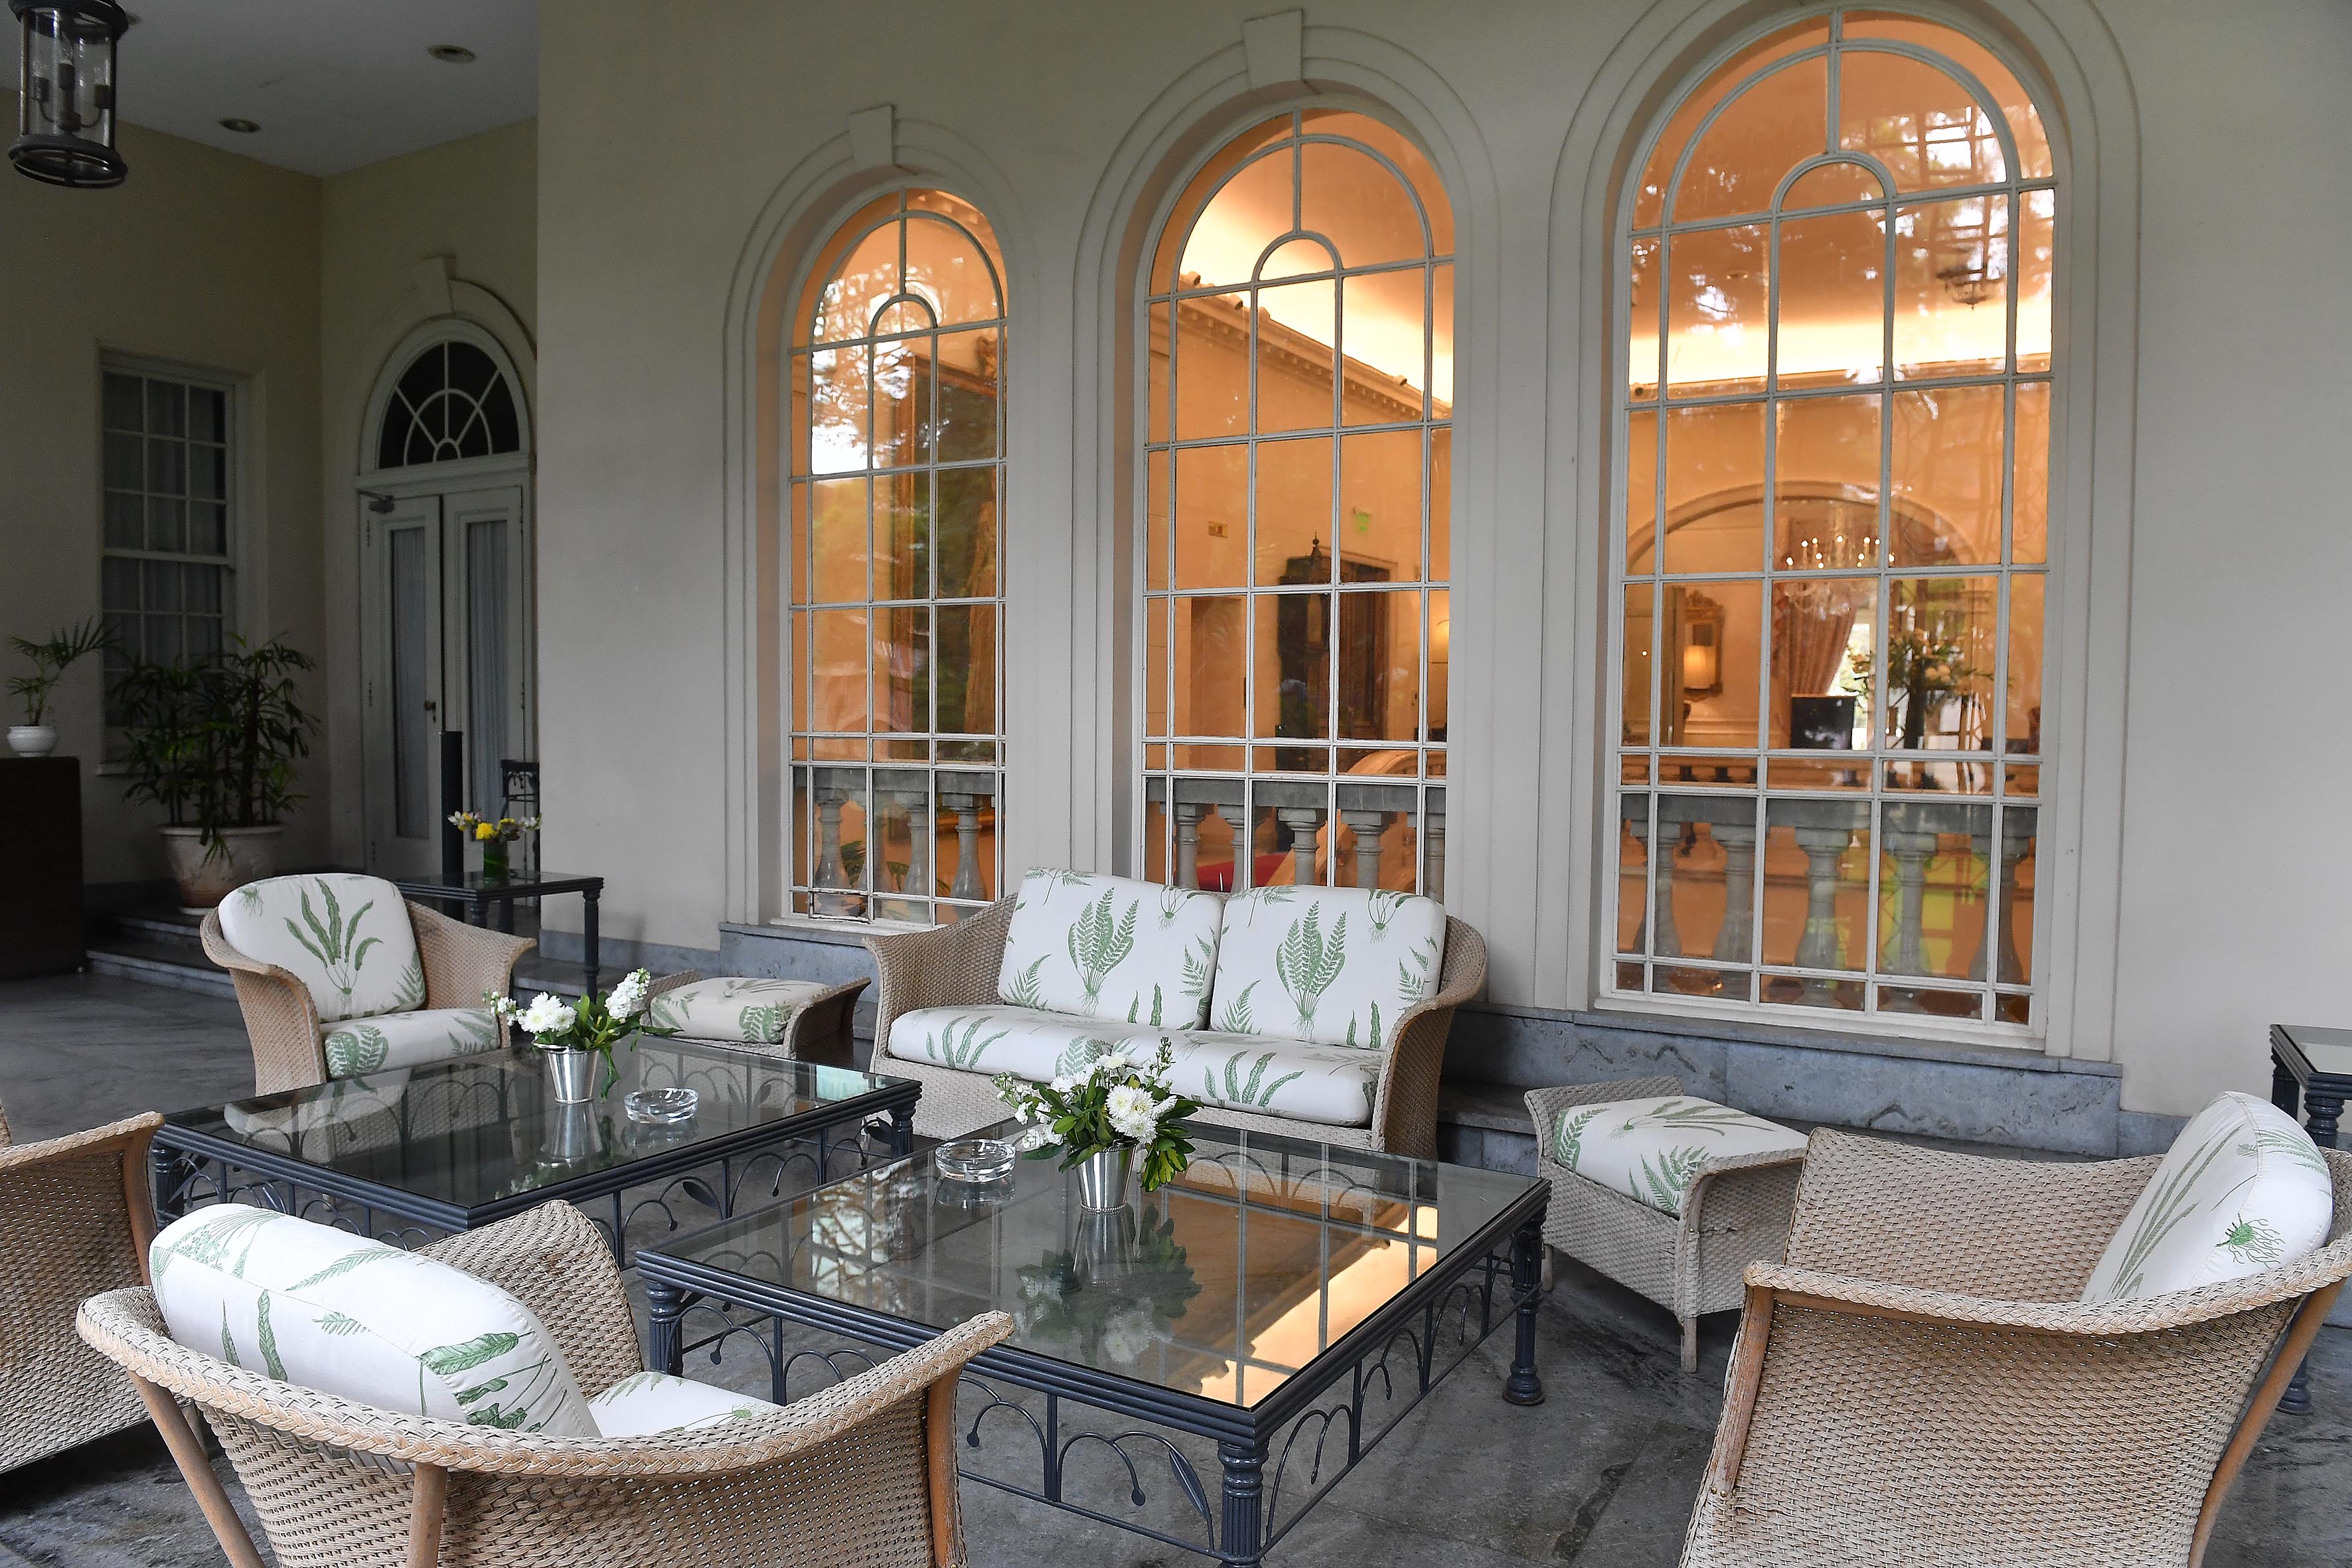 La terraza es una de las obras más modernas de la residencia y precede al jardín. La embajadora y su marido, Peter Hayes, suelen disfrutar de este espacio al aire libre (Maximiliano Luna)